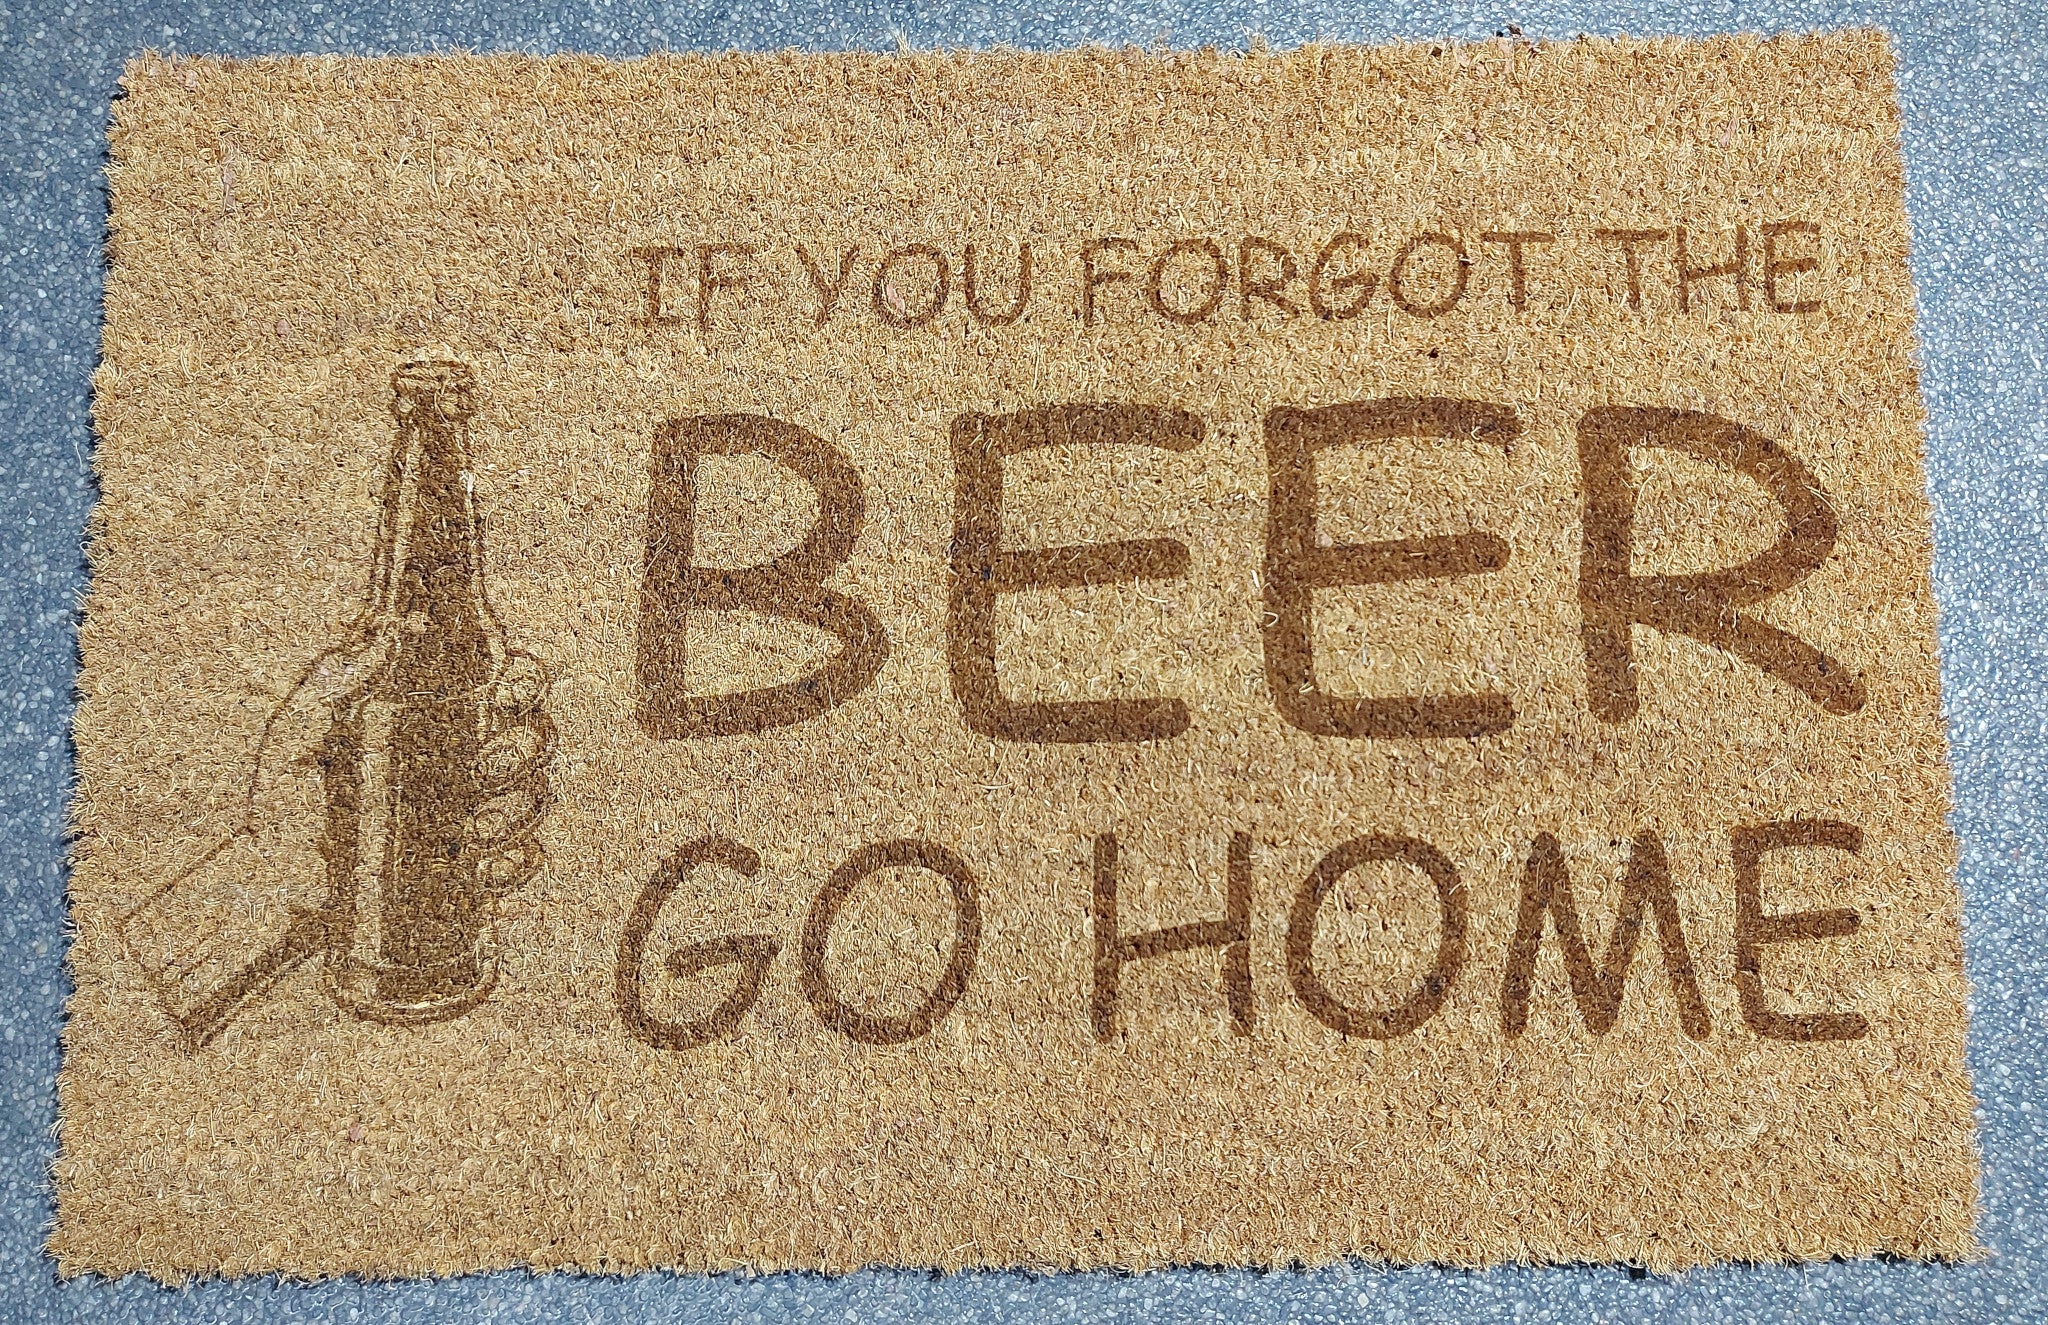 Kokos deurmat met gravure. Gravure 'If you forgot the beer, go home'.